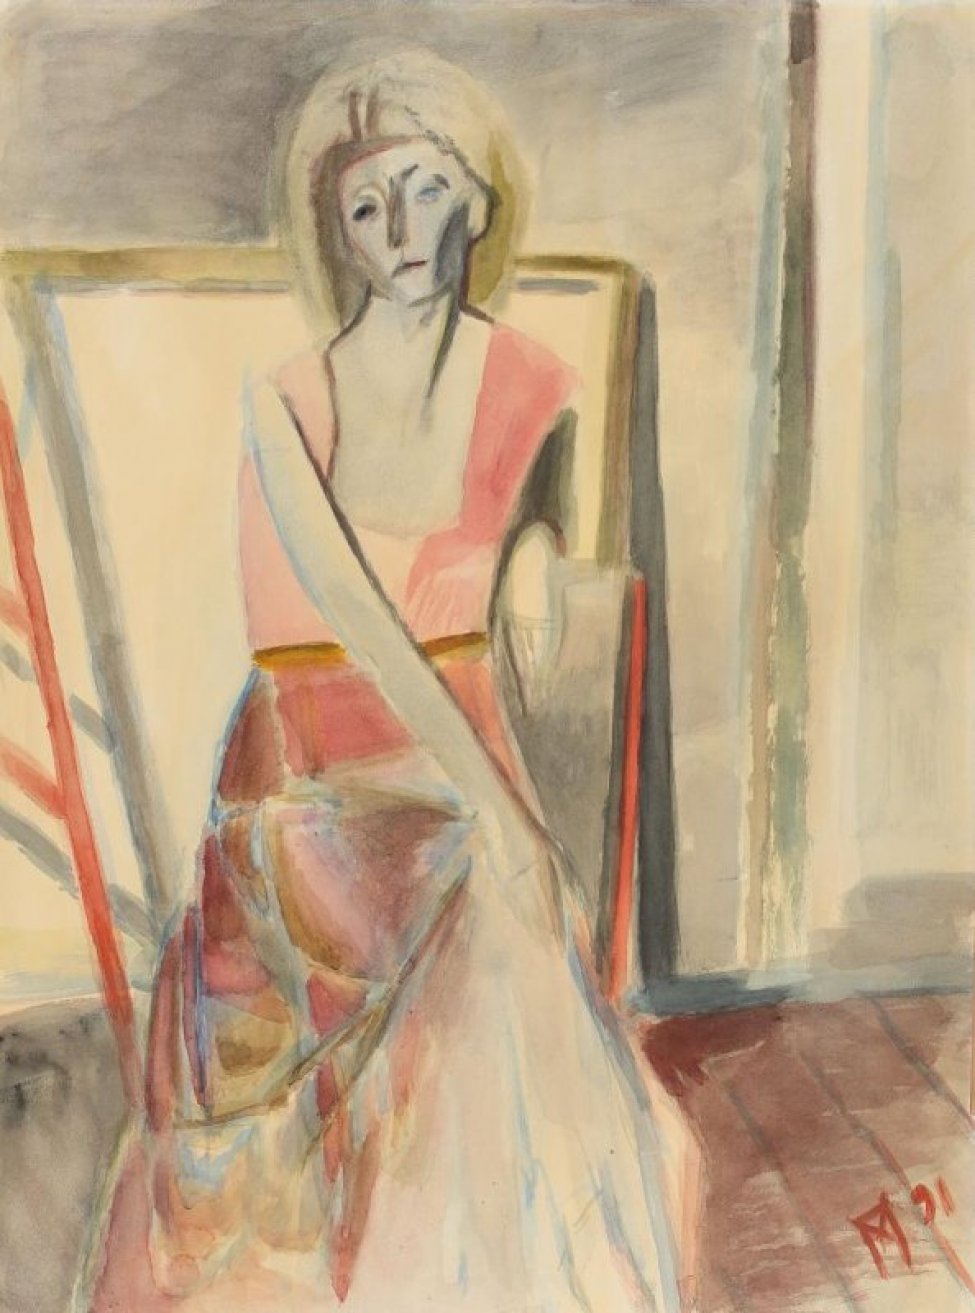 В интерьере мастерской художника на фоне рам - поколенное изображение сидящей девушки с пышной короткой стрижкой, в открытой розовой блузке, пестрой юбке. Правая рука лежит на коленях.